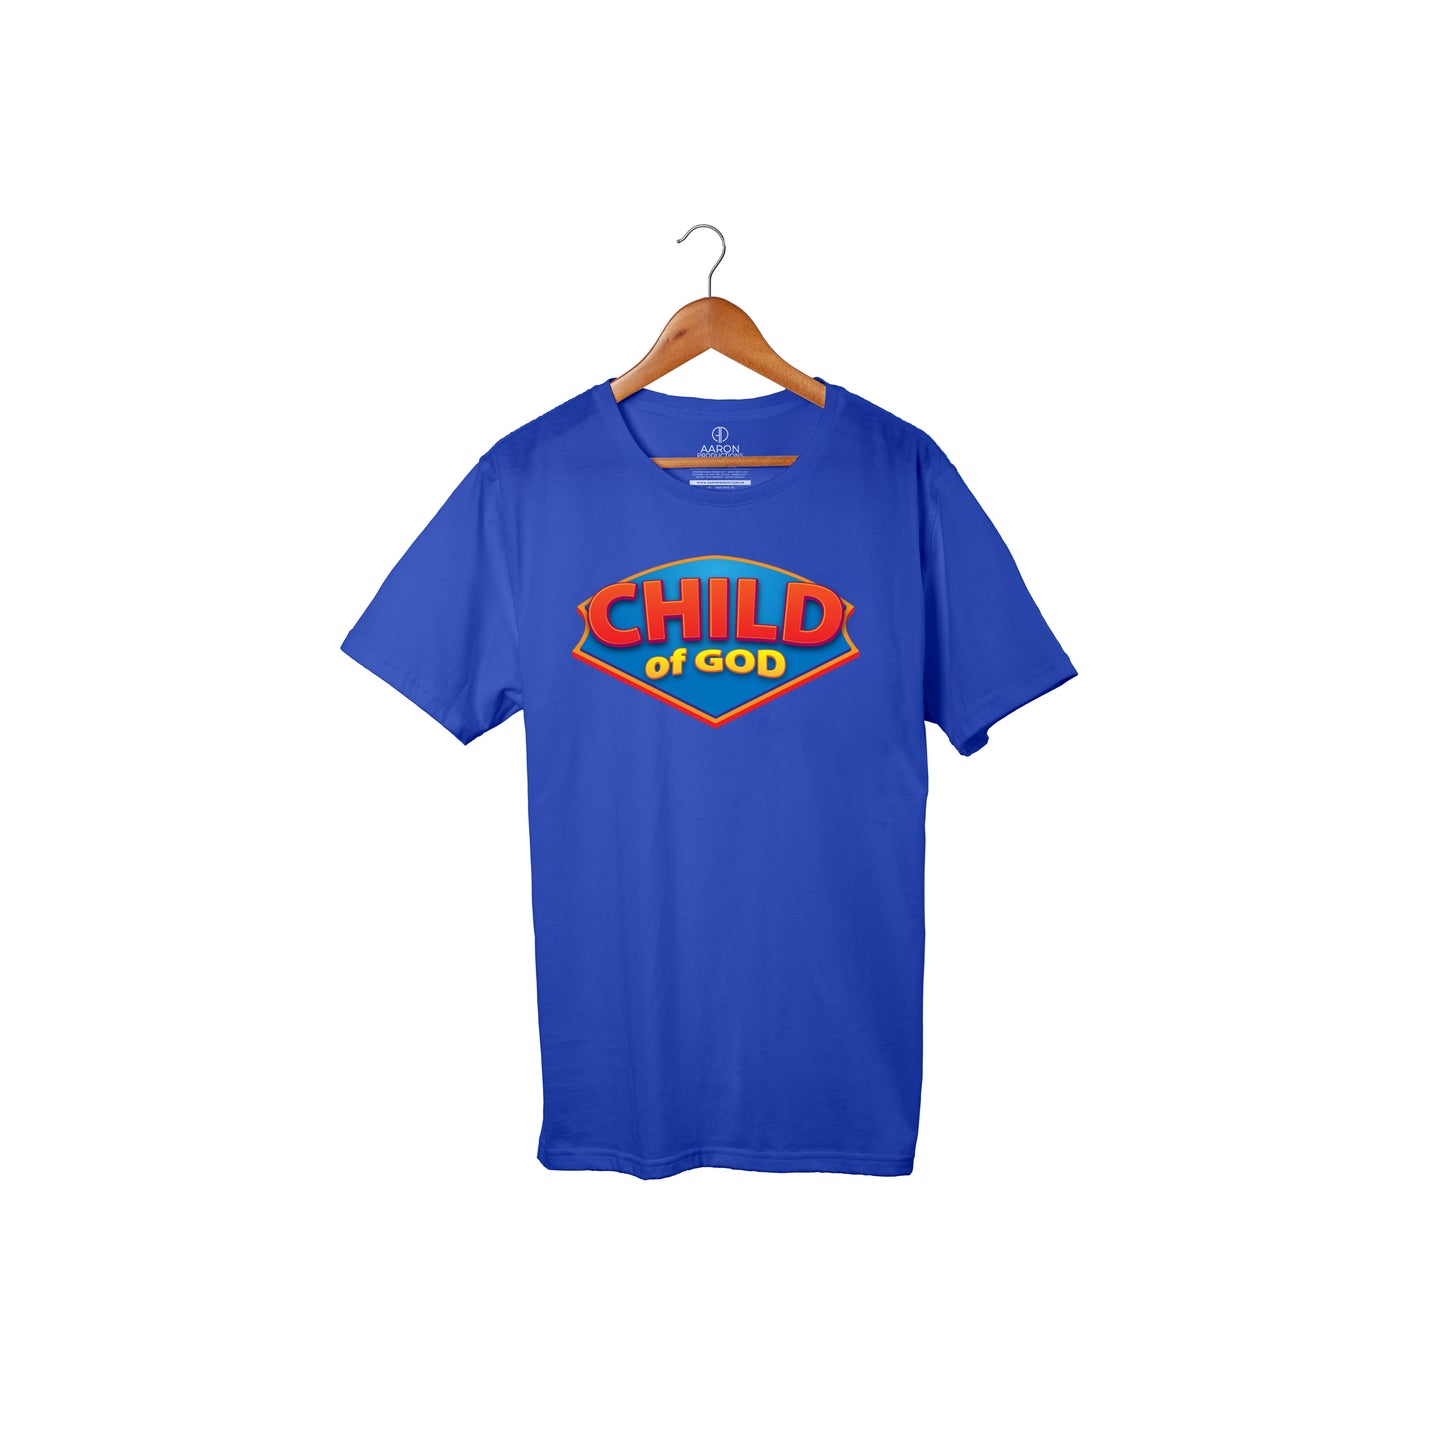 Child of God - Boys Tshirt